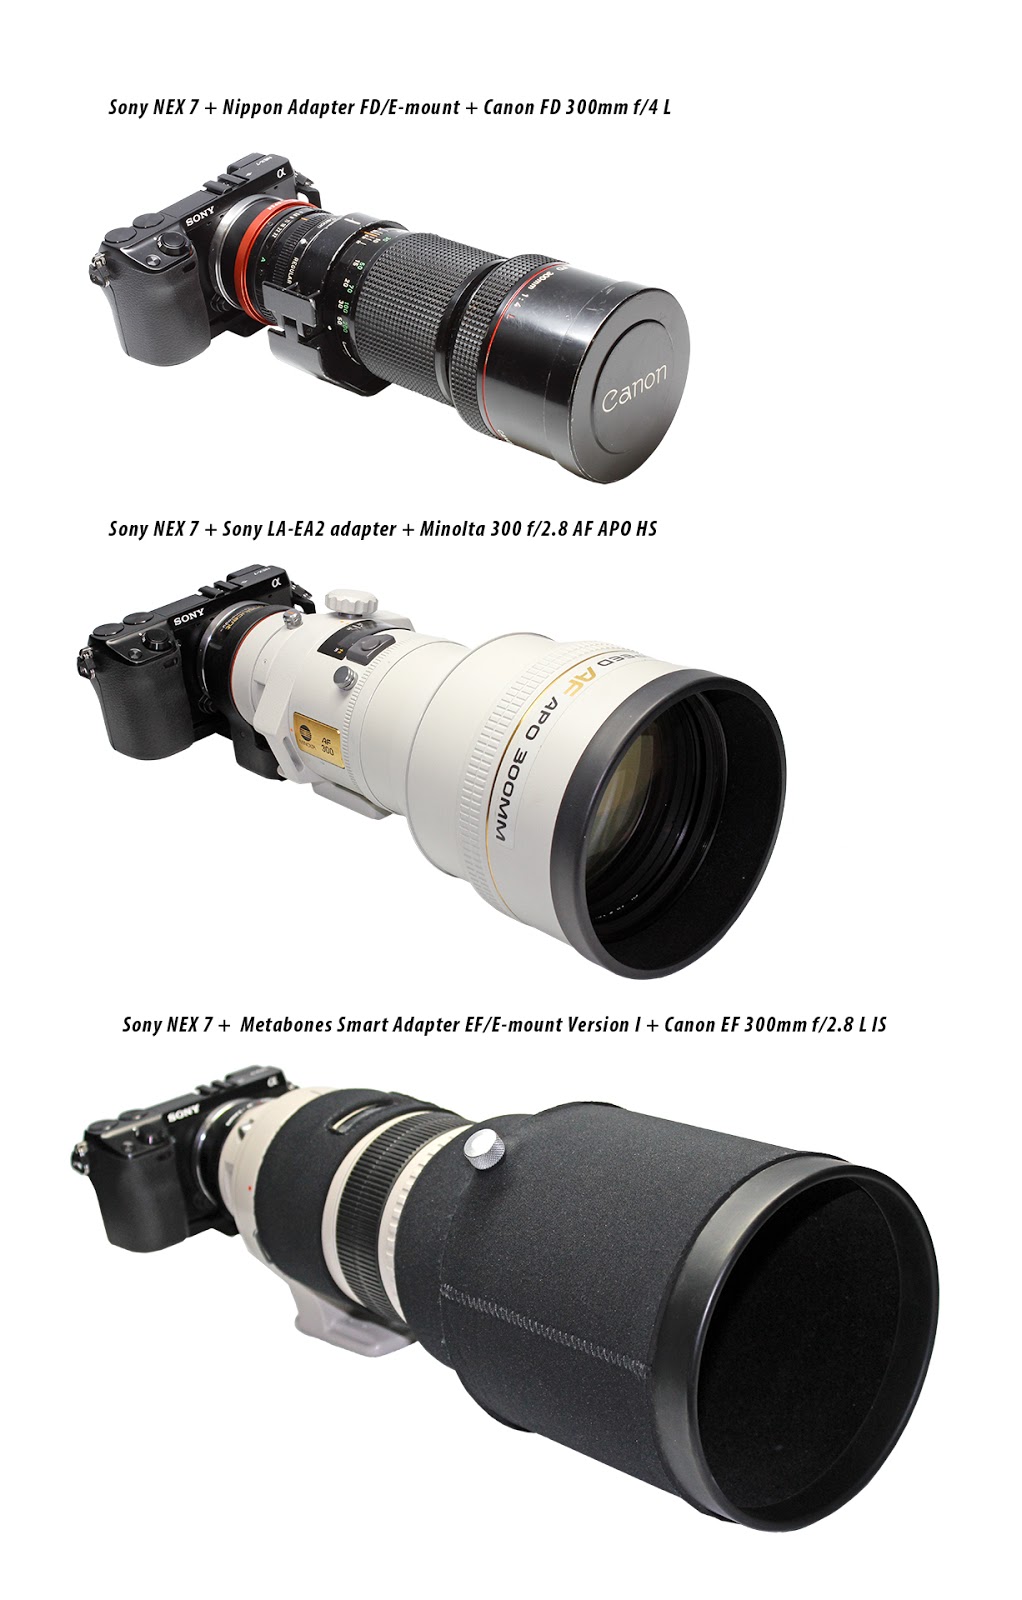 Minolta AF 300 f2.8 APO G HS, Canon EF 300 f2.8 L IS, Canon FD 300 